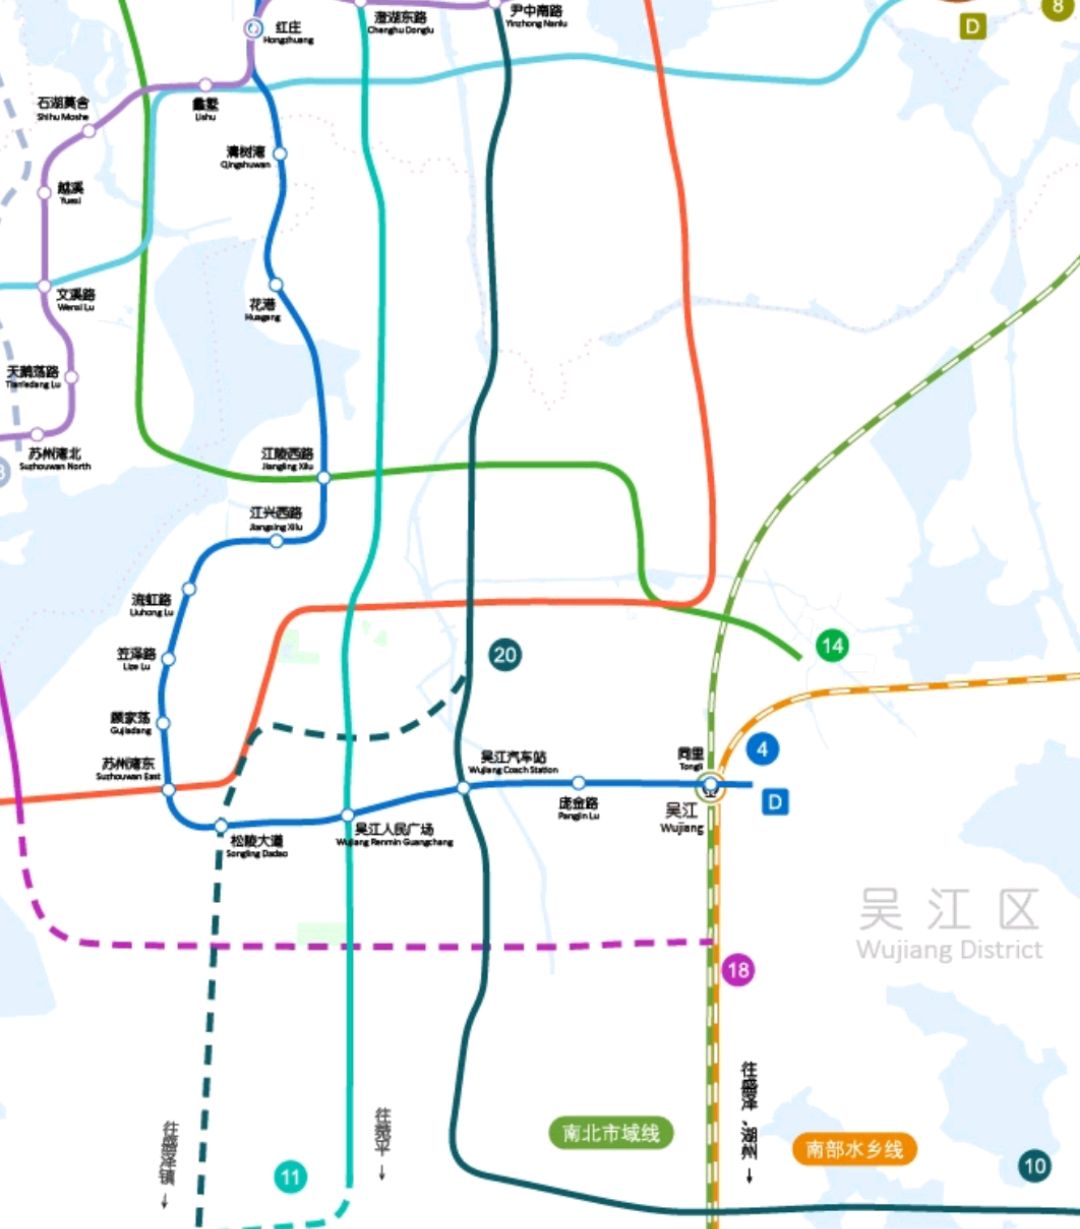 苏州昆山未来地铁需要进一步统筹规划